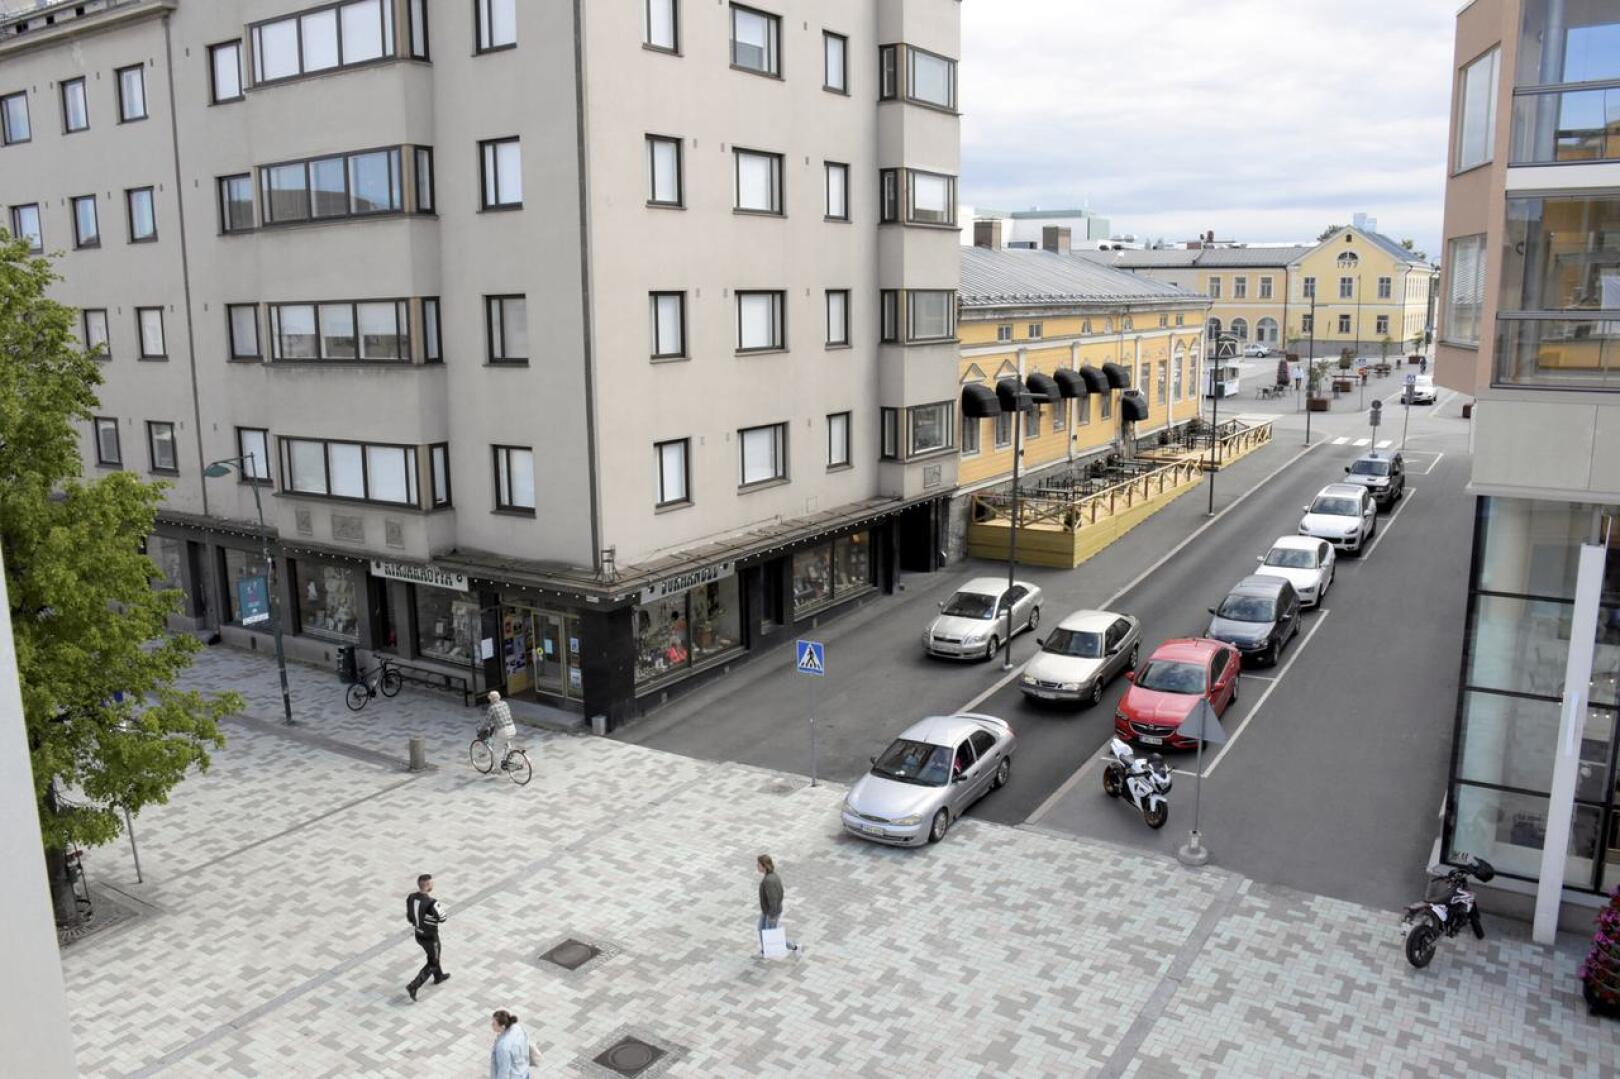 Kompakti Pietarsaari pärjää mainiosti ”varttitunnin kaupunkien” kisassa. Etäisyydet ovat lyhyitä, ja paljon on tarjolla ilman autoakin.